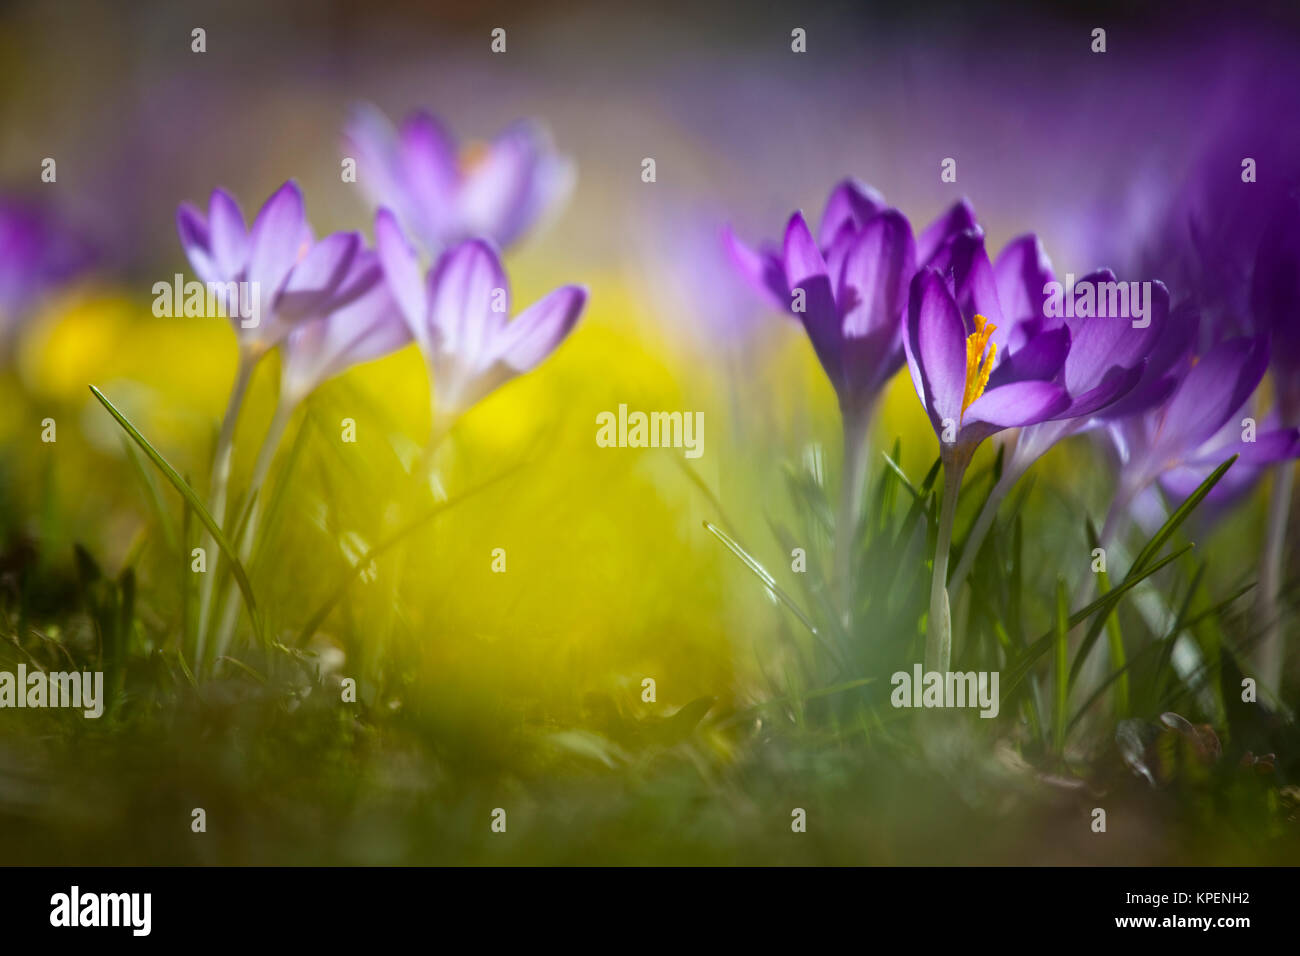 Krokus im Frühjahr und wolkenloser Himmel,nah fotografiert,Pflanzen im sonnigen Gegenlicht,a la de los varones und Farben Foto de stock